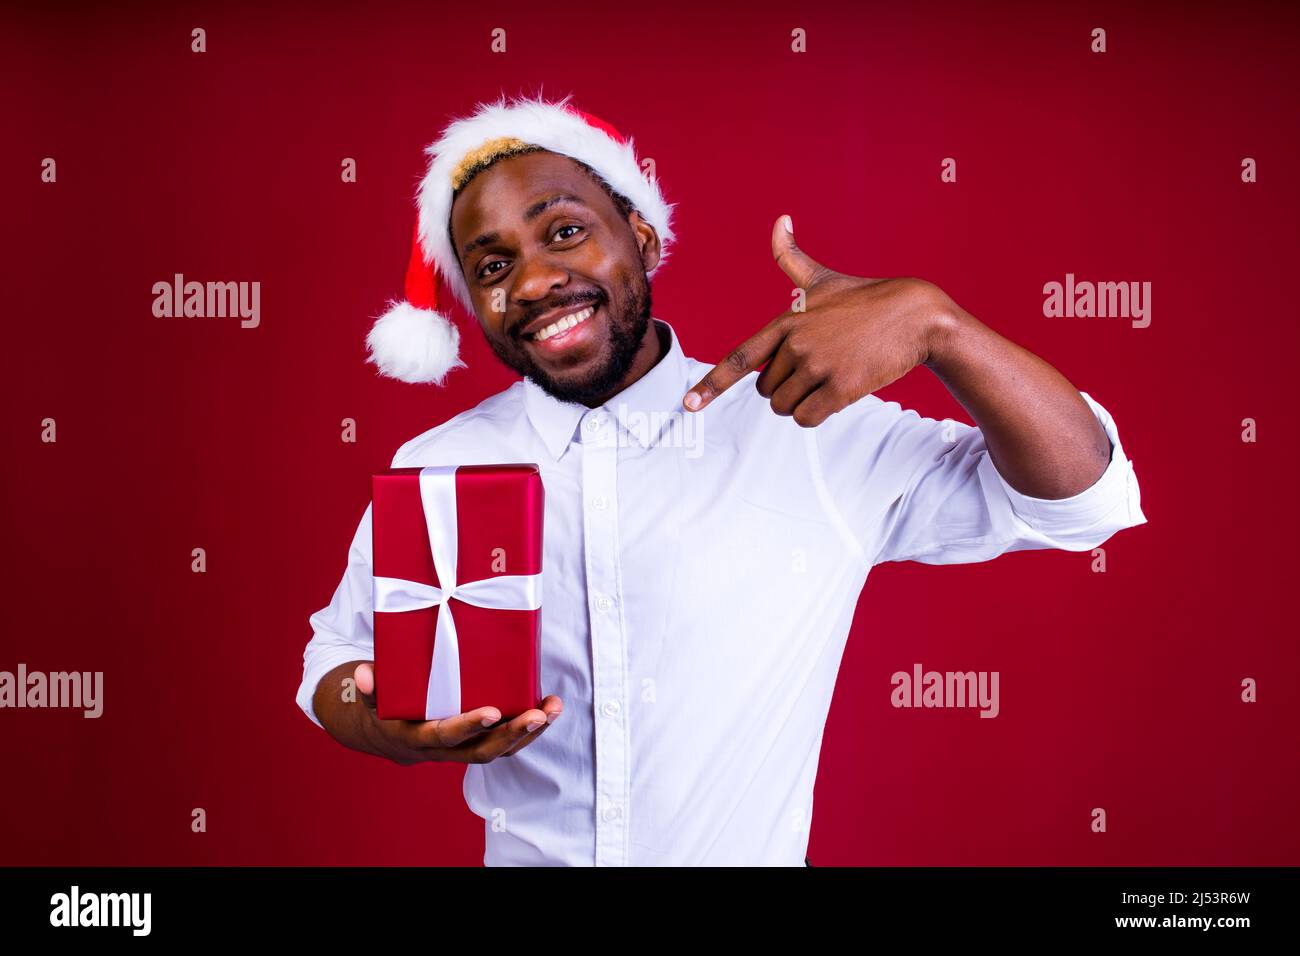 lateinamerikanischer mann mit weihnachtsmütze auf Studio-rotem Hintergrund Stockfoto